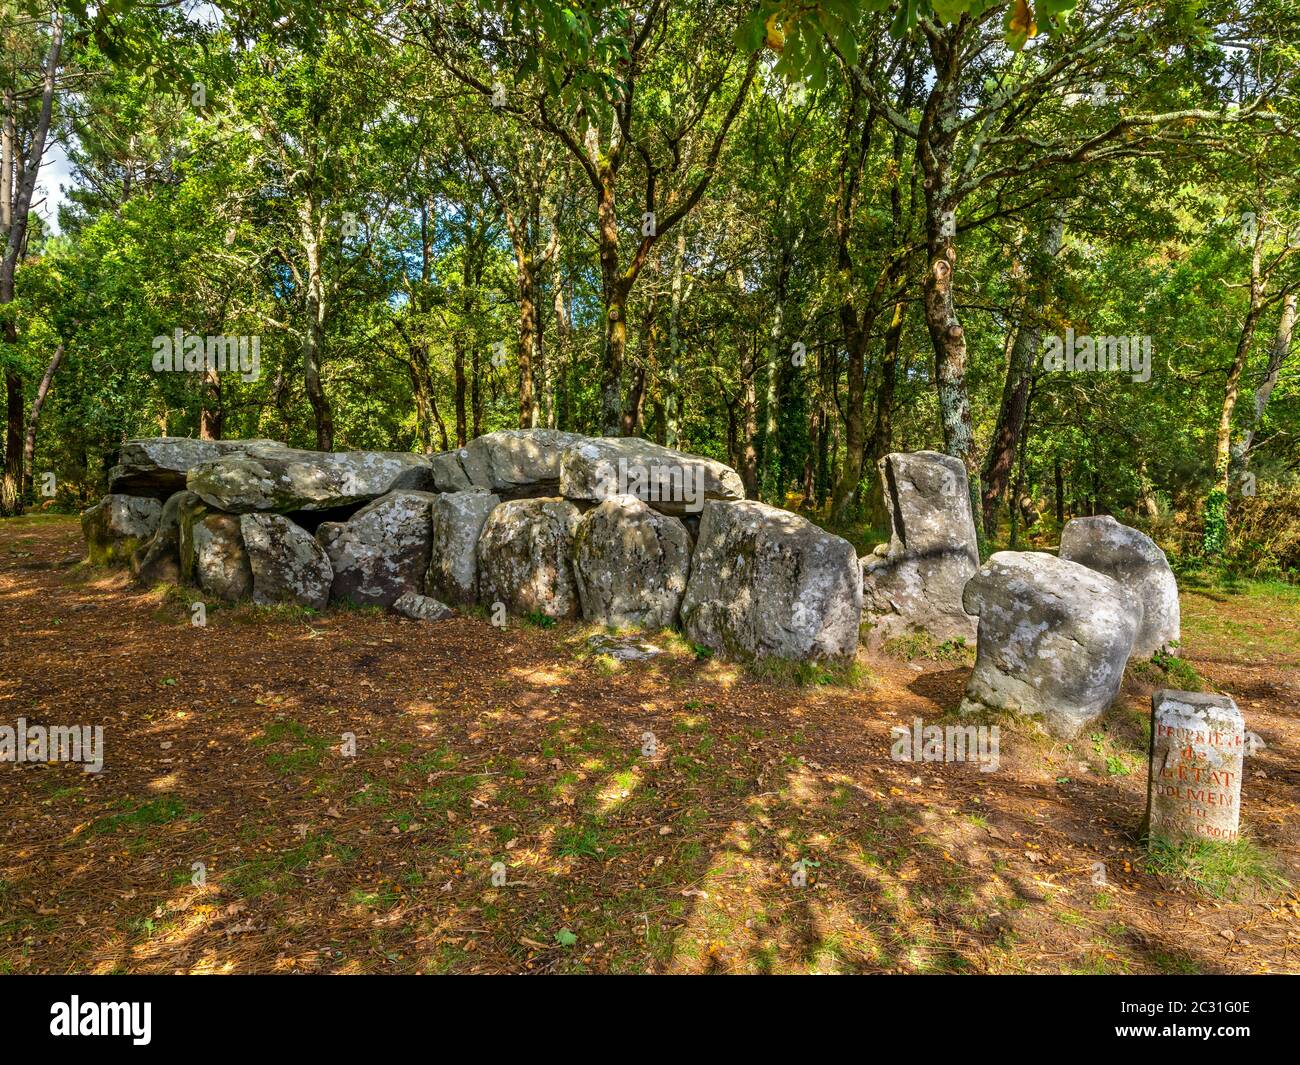 Formations rocheuses au milieu de la forêt, Mane Croc'h près d'Erdeven, Bretagne occidentale, France Banque D'Images